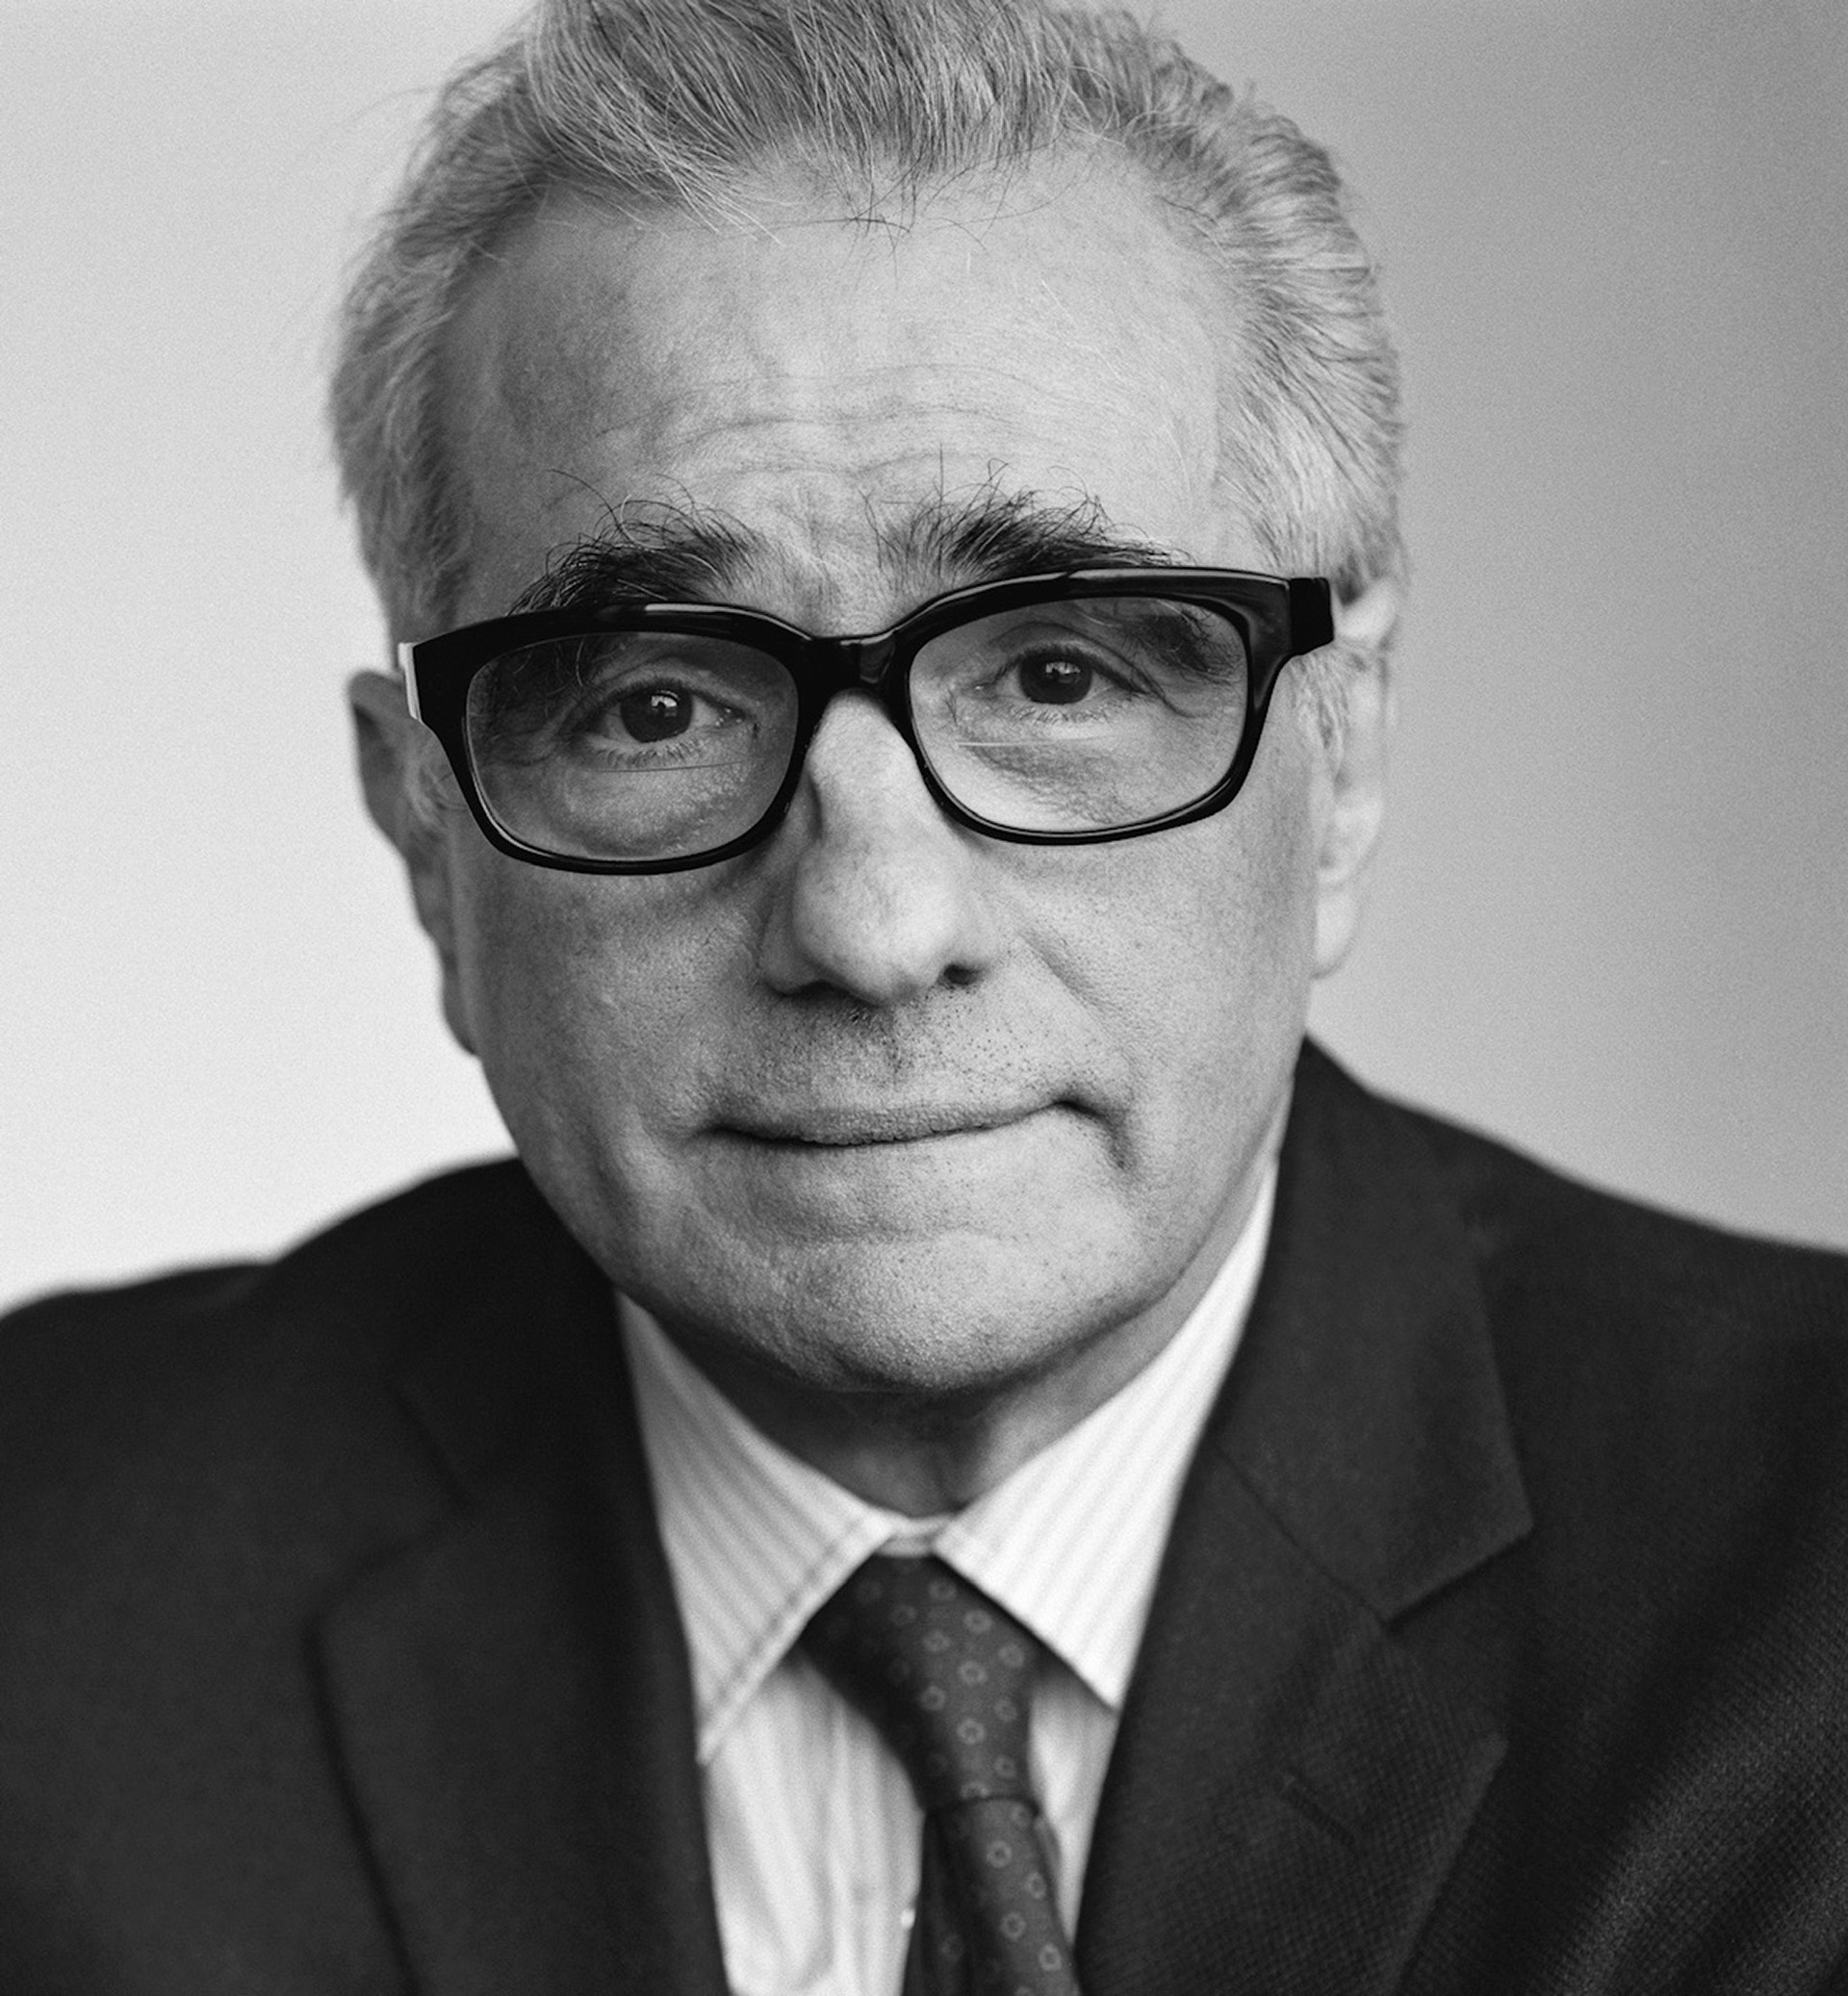 Martin Scorsese ’64, ’68, Hon. ’92, Dean's Council